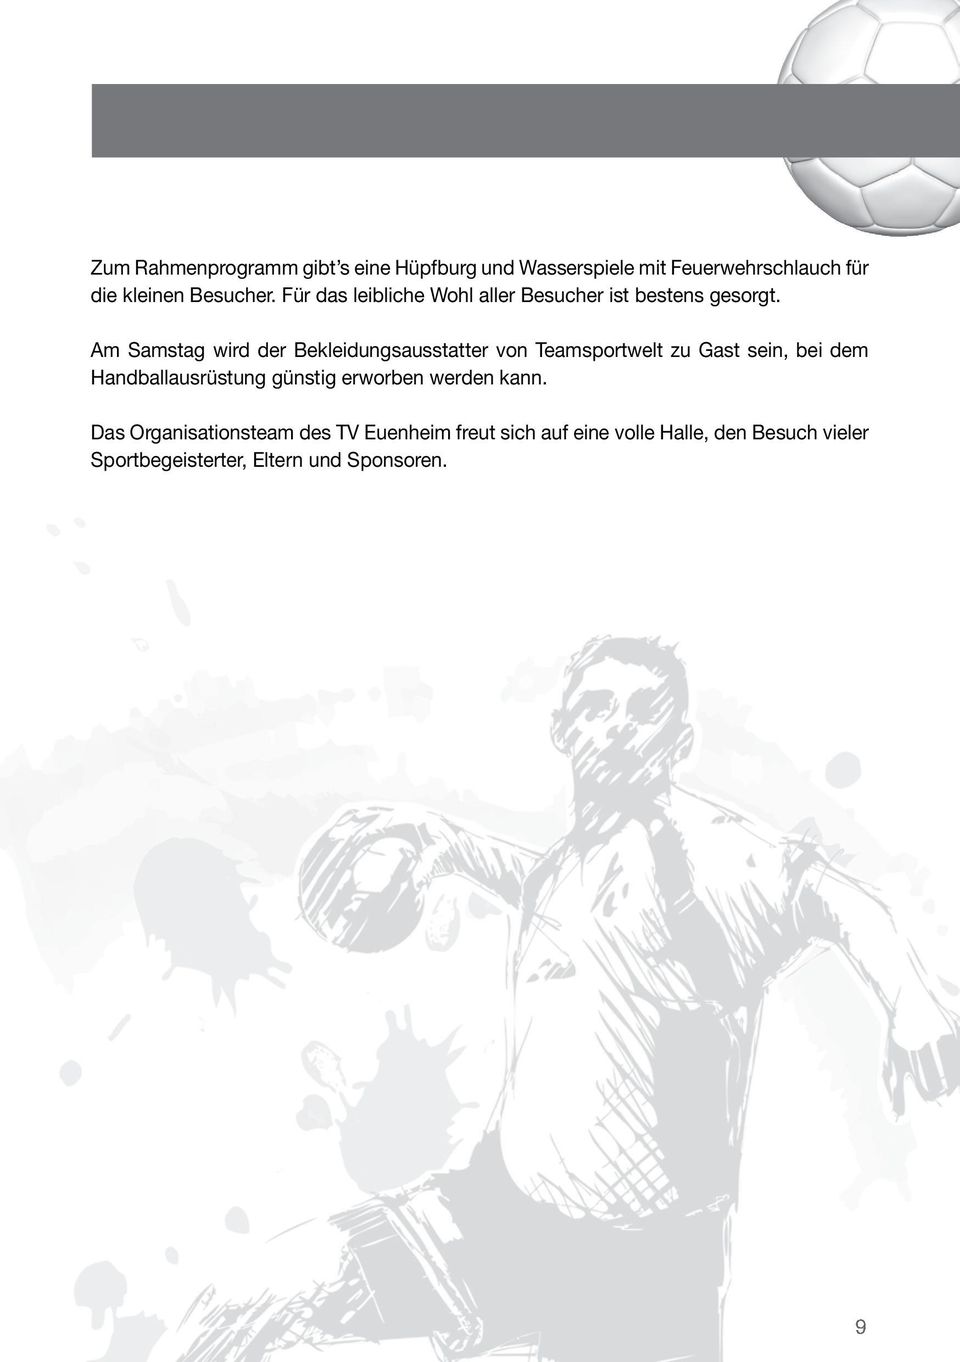 Am Samstag wird der Bekleidungsausstatter von Teamsportwelt zu Gast sein, bei dem Handballausrüstung